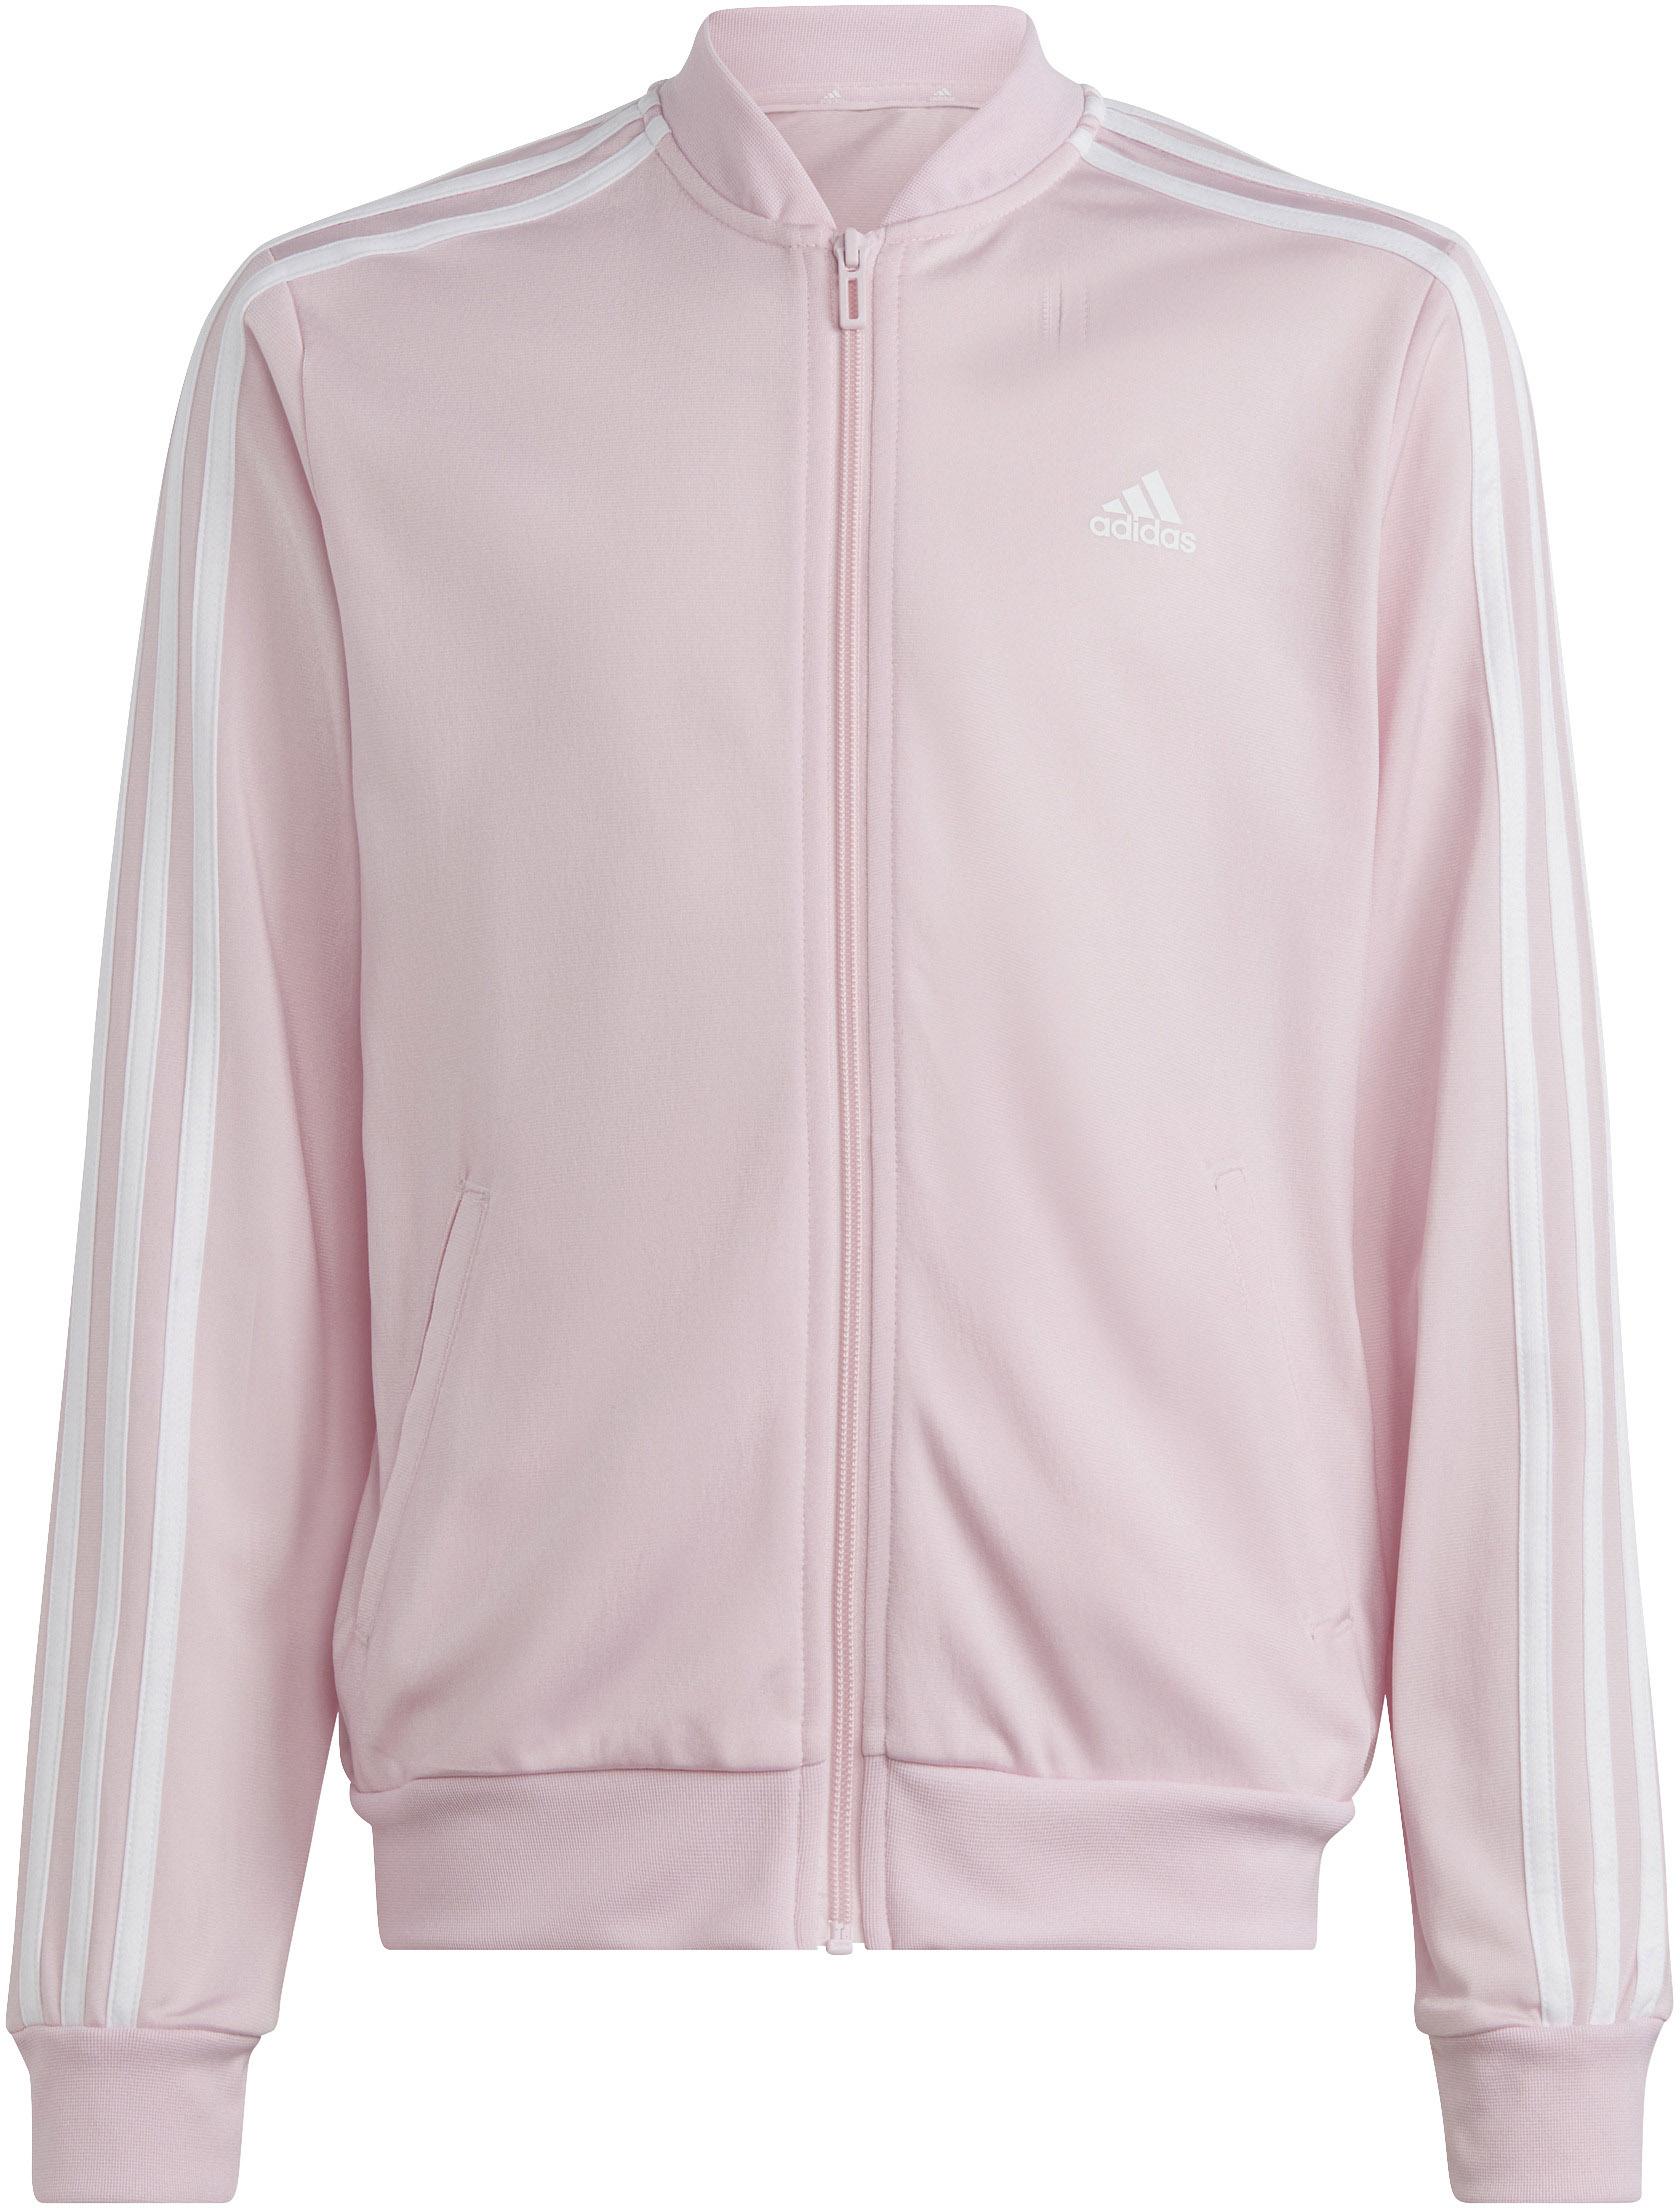 Adidas Trainingsanzug Mädchen clear fuchsia-white von lucid pink-semi SportScheck kaufen im Shop Online